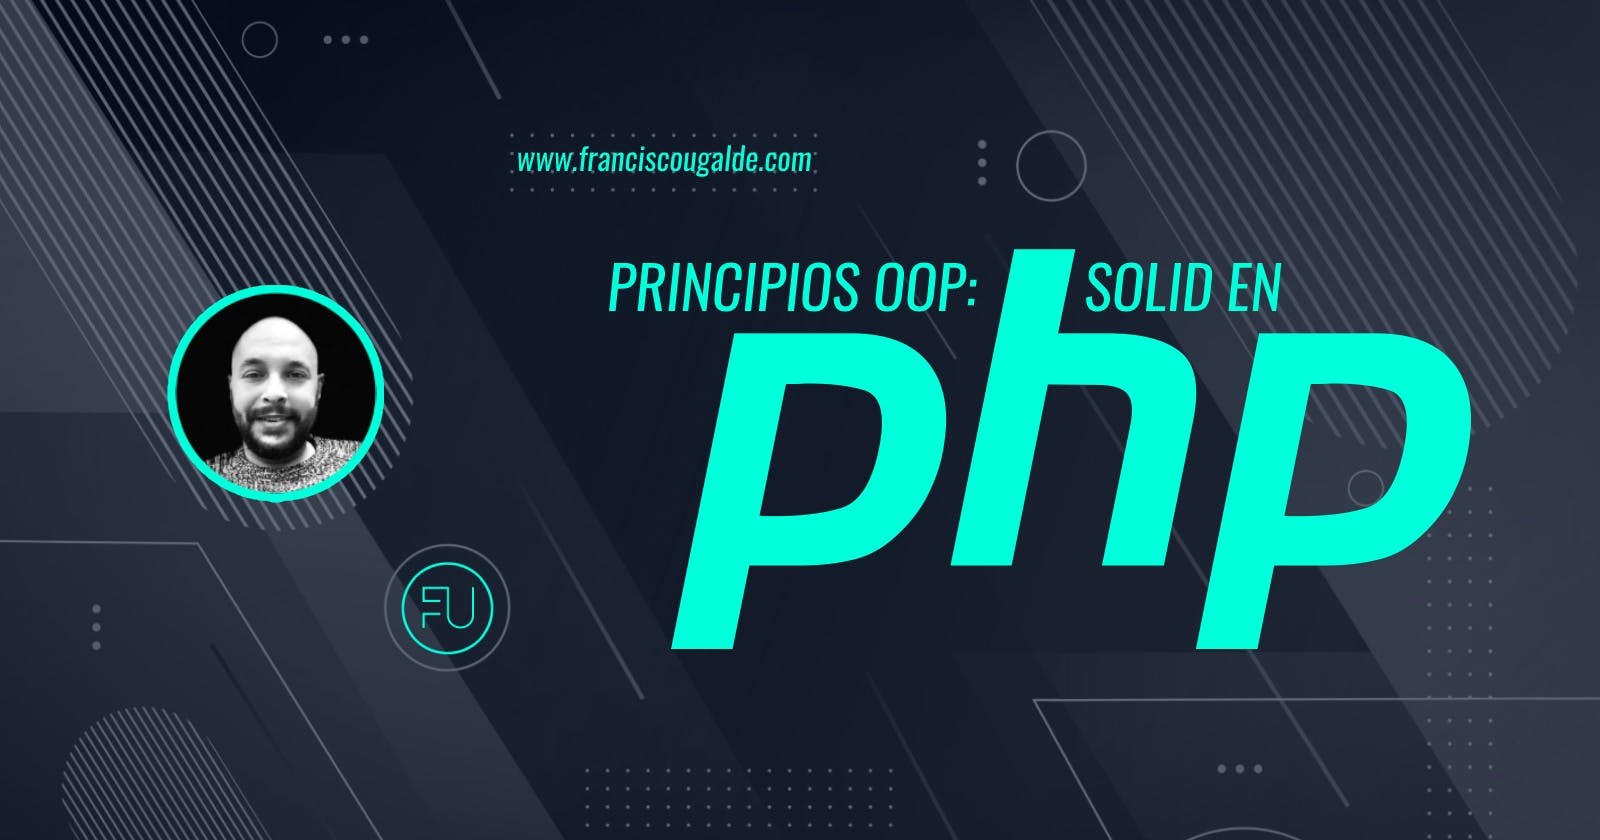 Principios OOP: SOLID en PHP